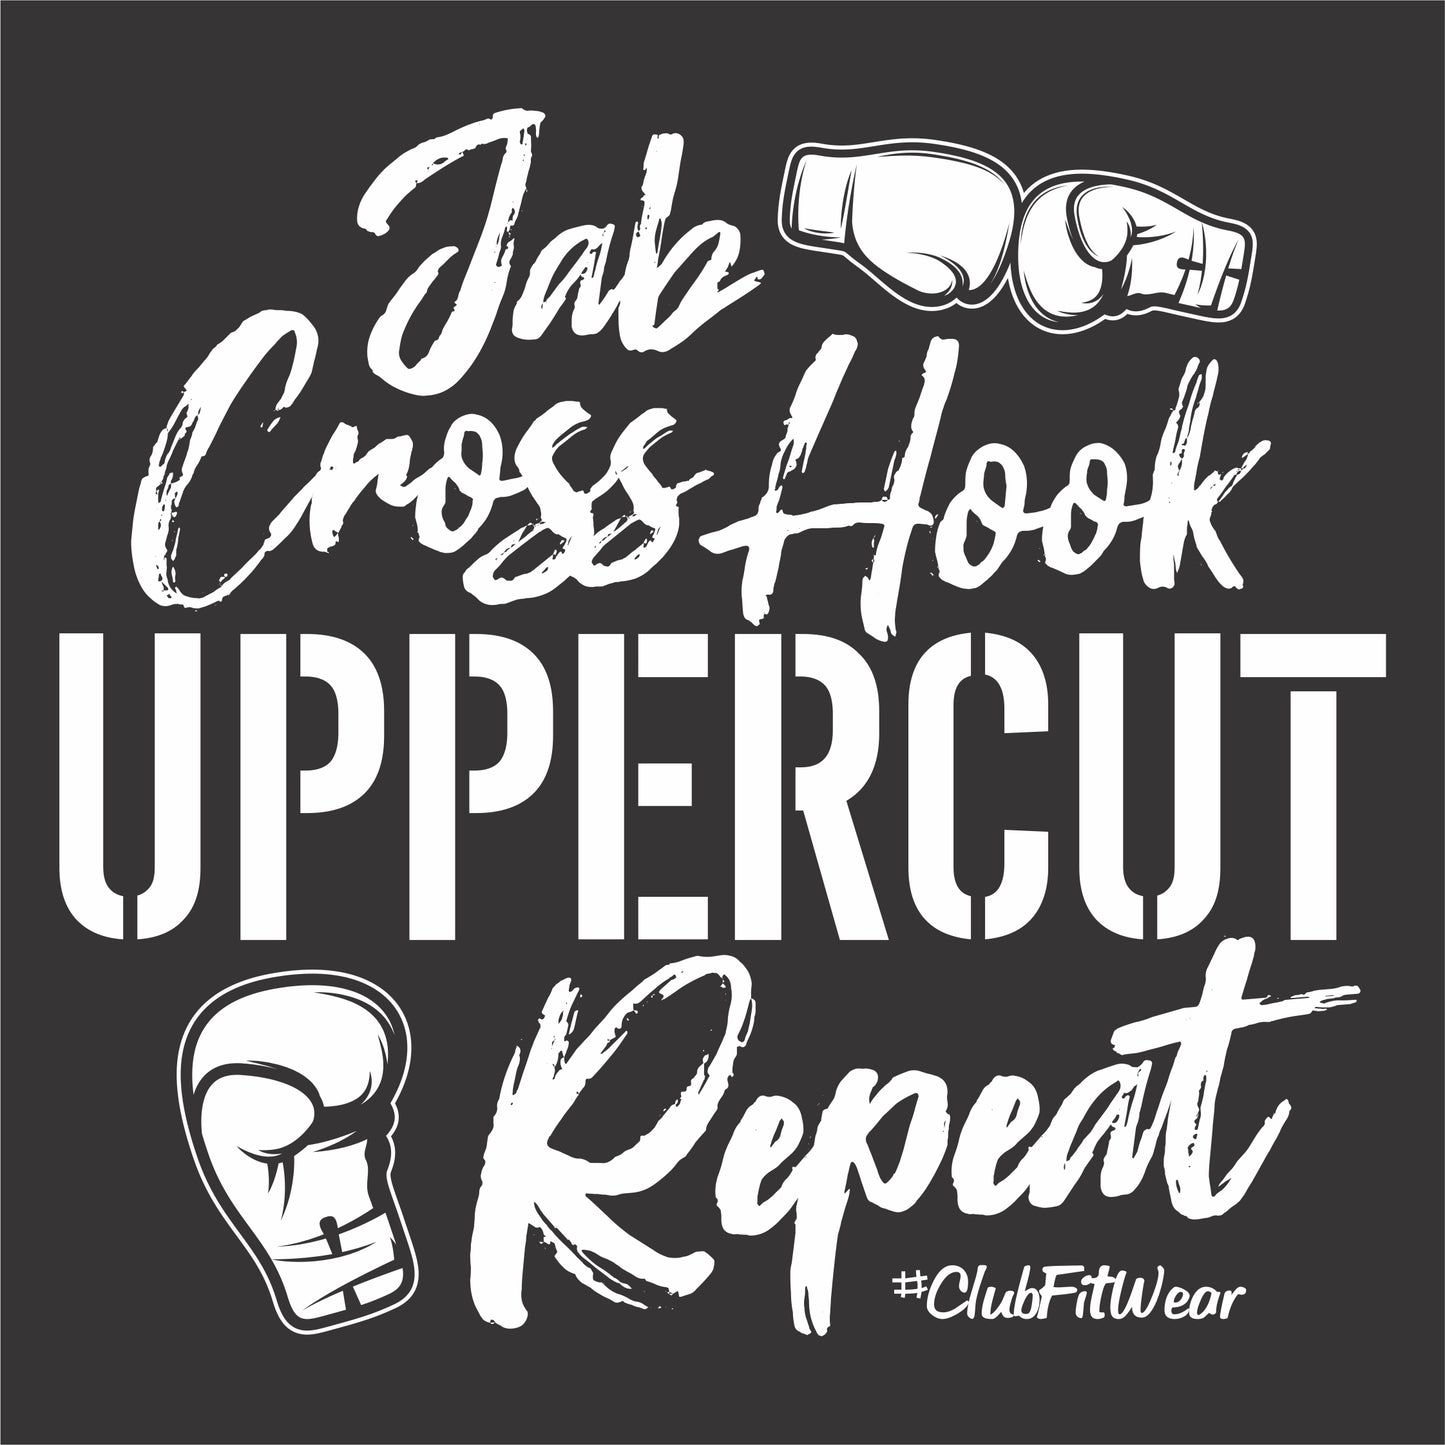 Jab Cross Hook Uppercut Repeat